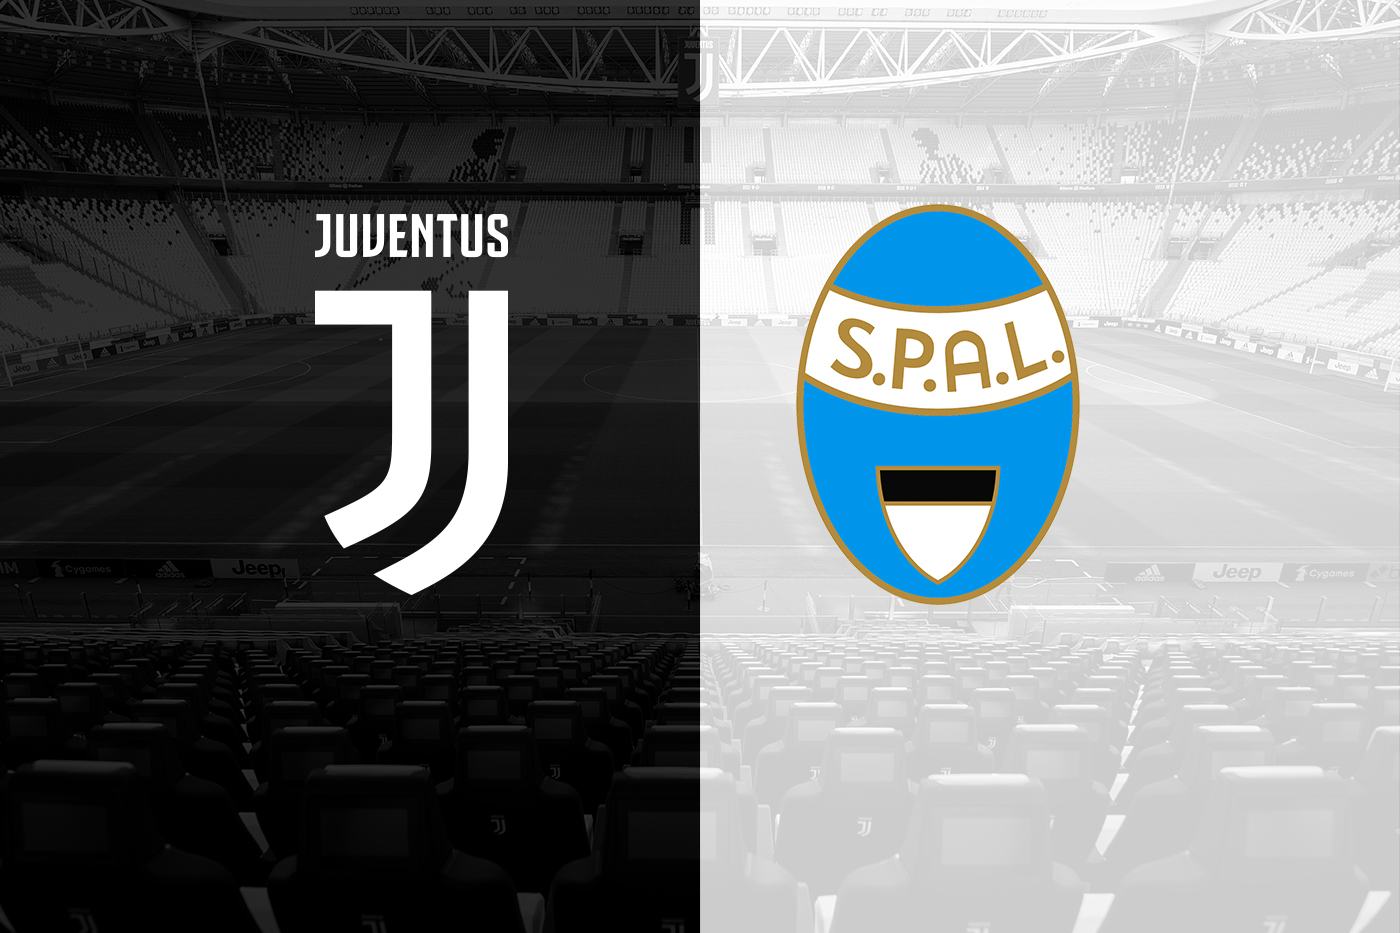 Soi kèo bóng đá tài xỉu trận Juventus vs Spal vào 0h00 ngày 25/11/2018 1